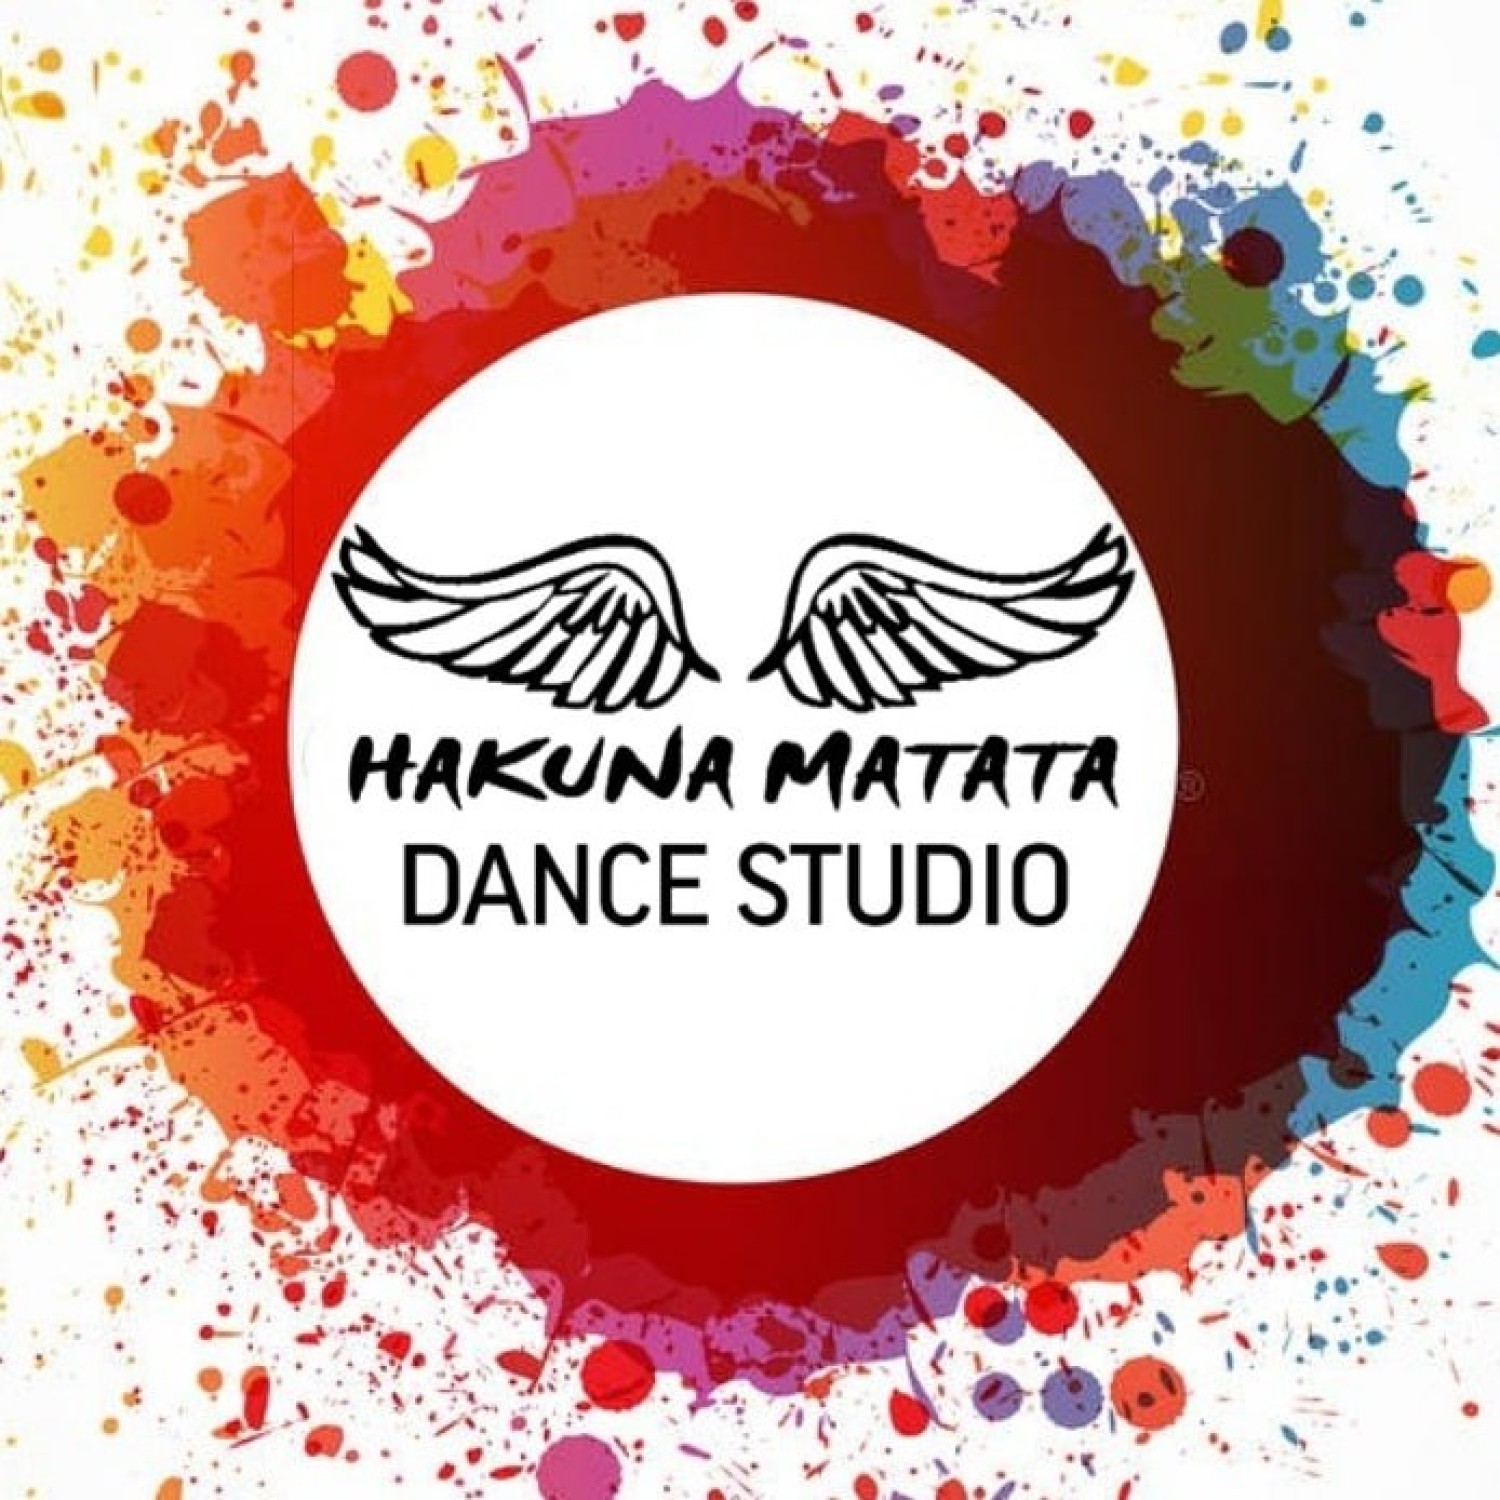 Танцевальная студия "Hakuna Matata"